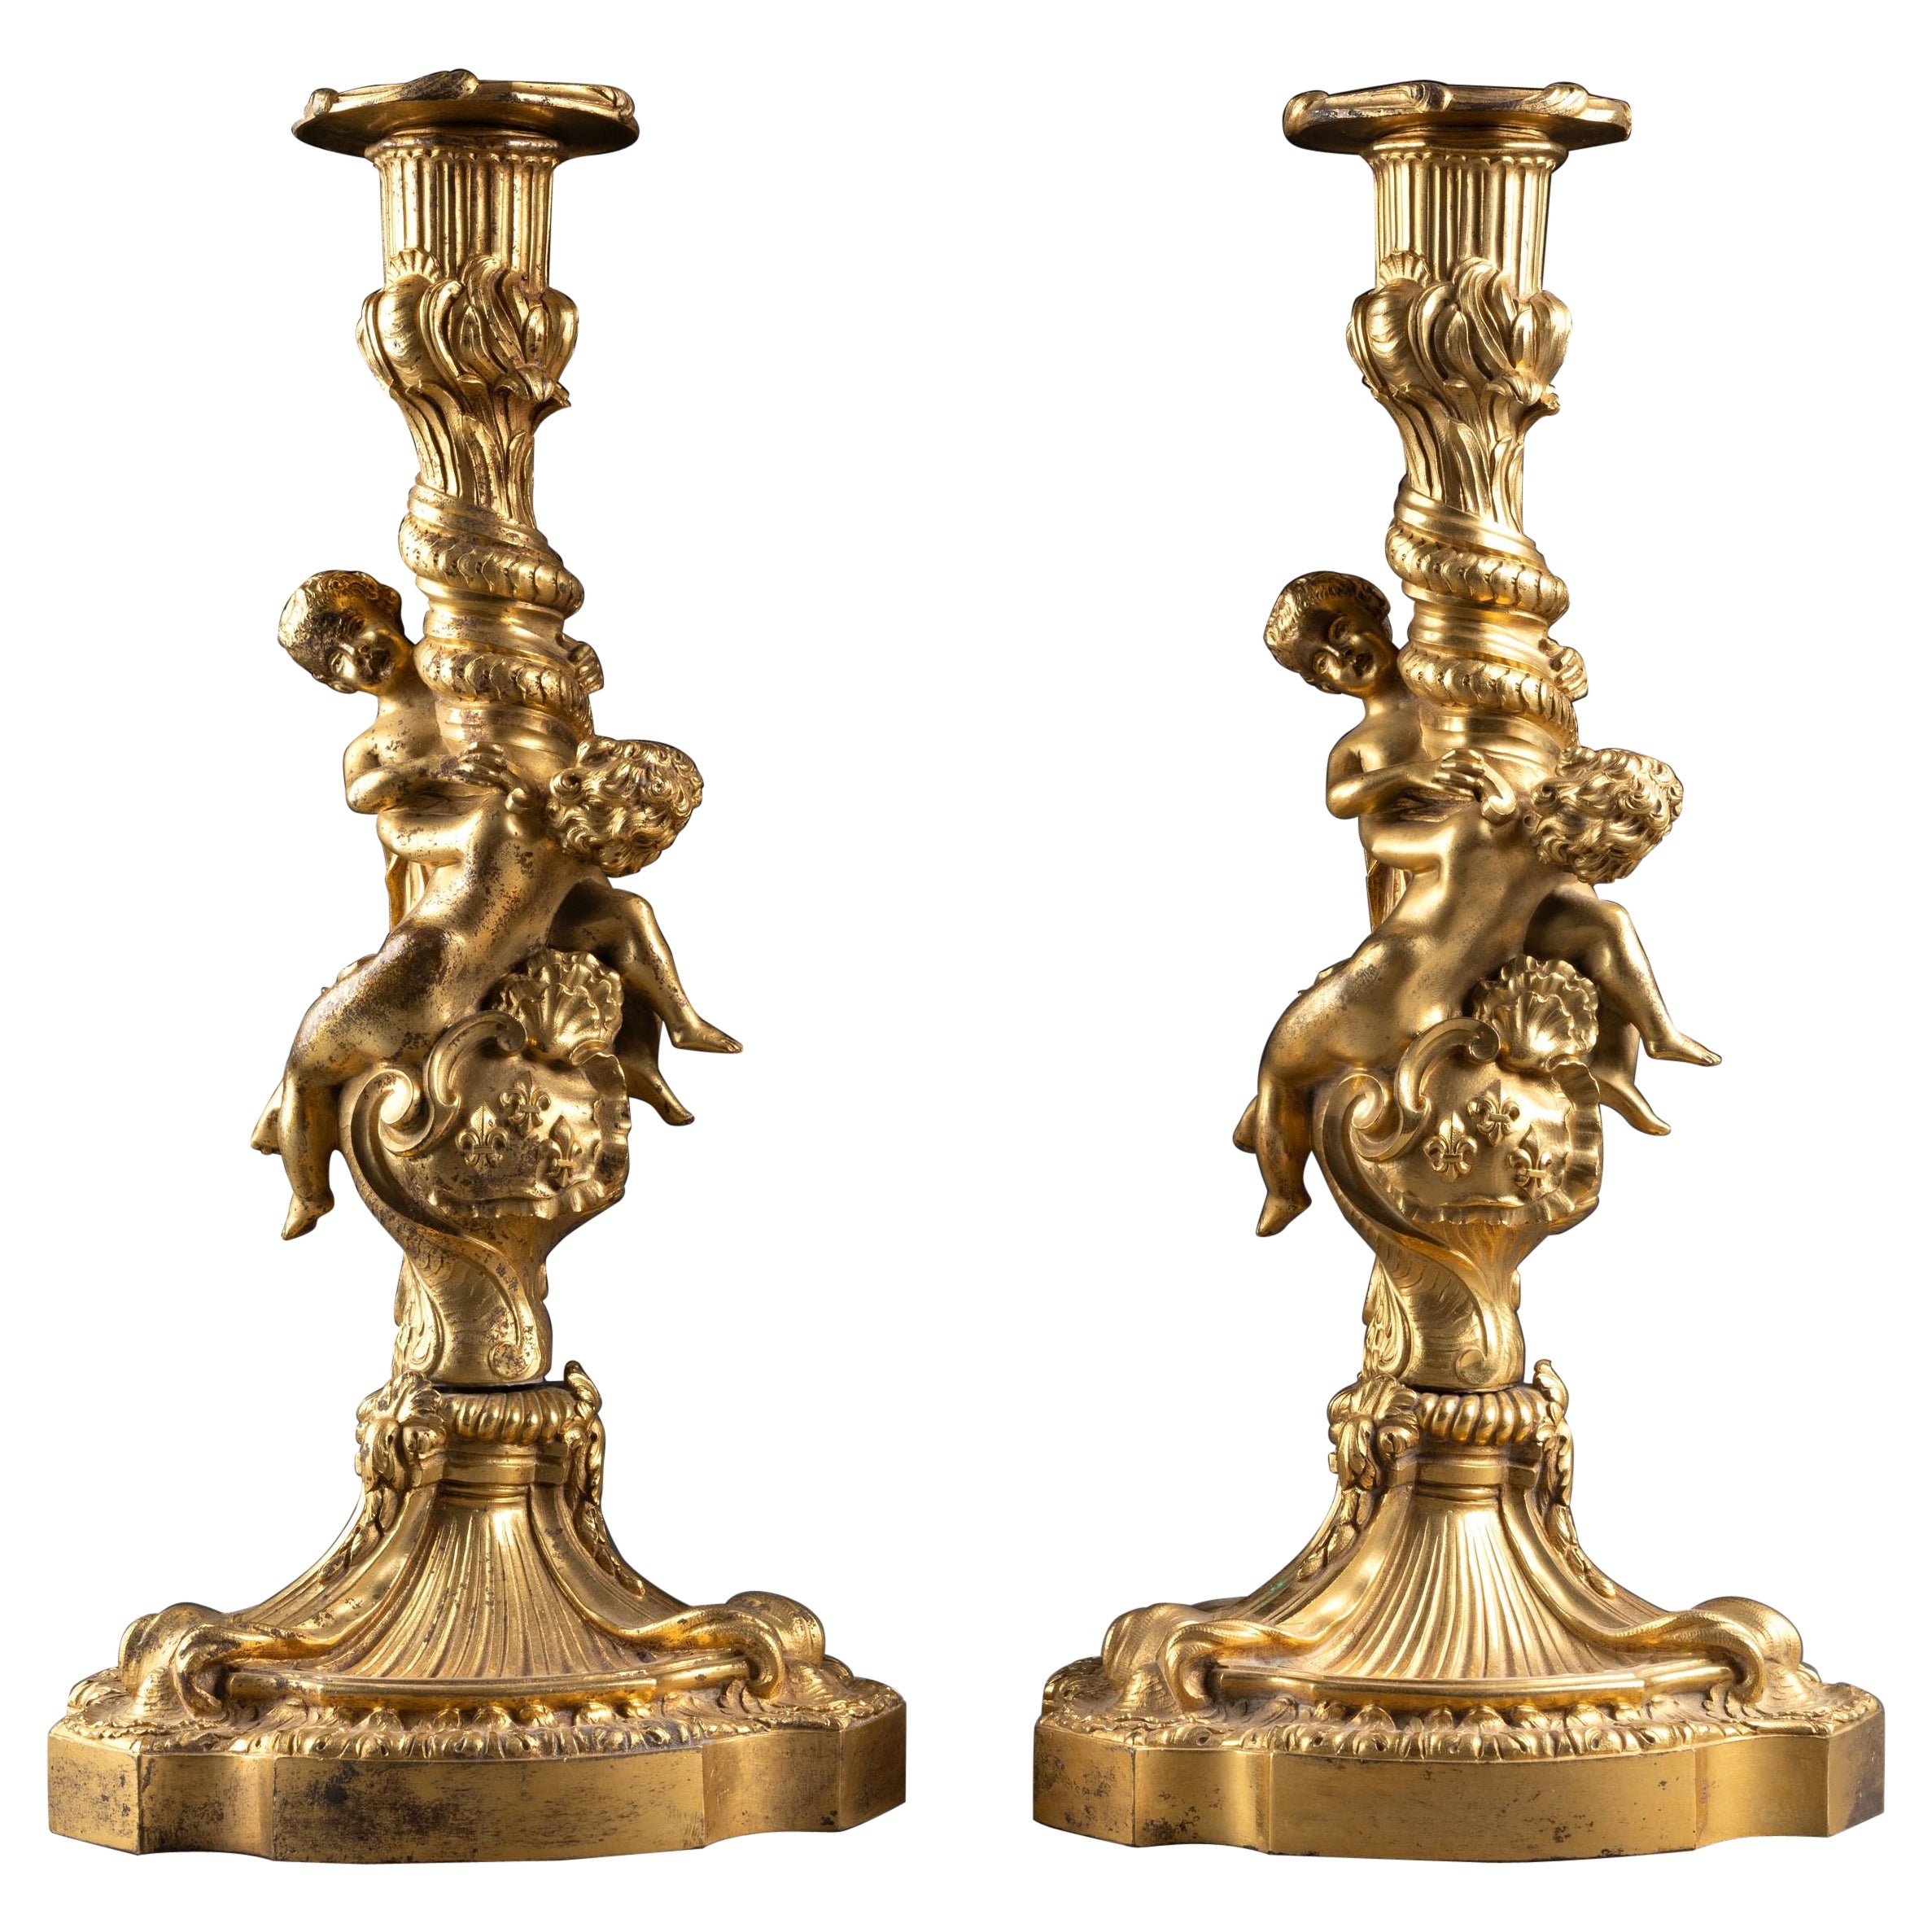 Paire de chandeliers Louis XV en bronze doré avec armoiries royales françaises, 19e siècle